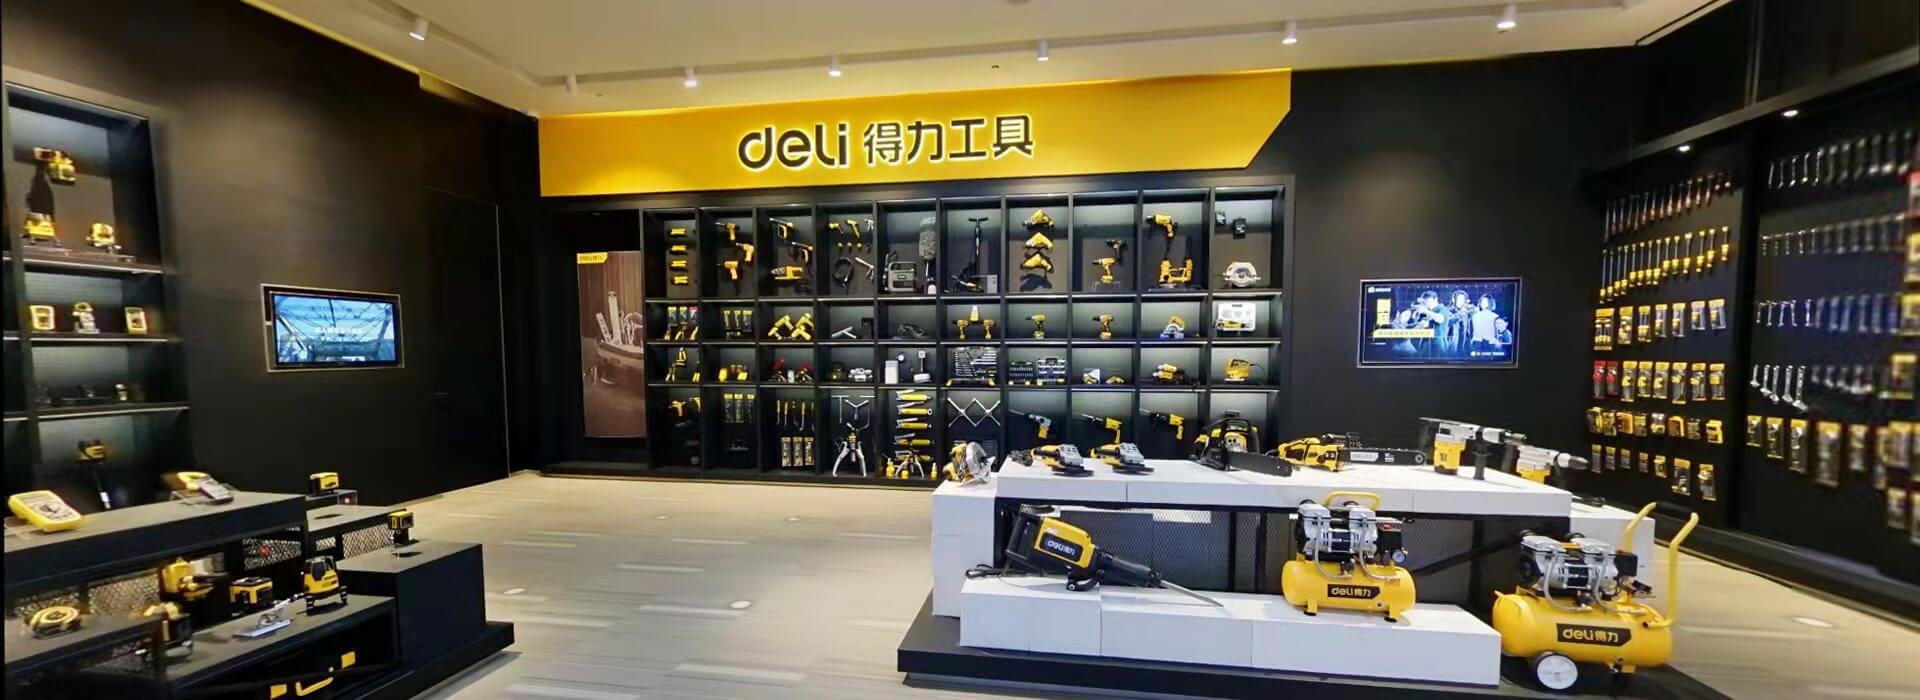 Deli Tools Exhibition Hall